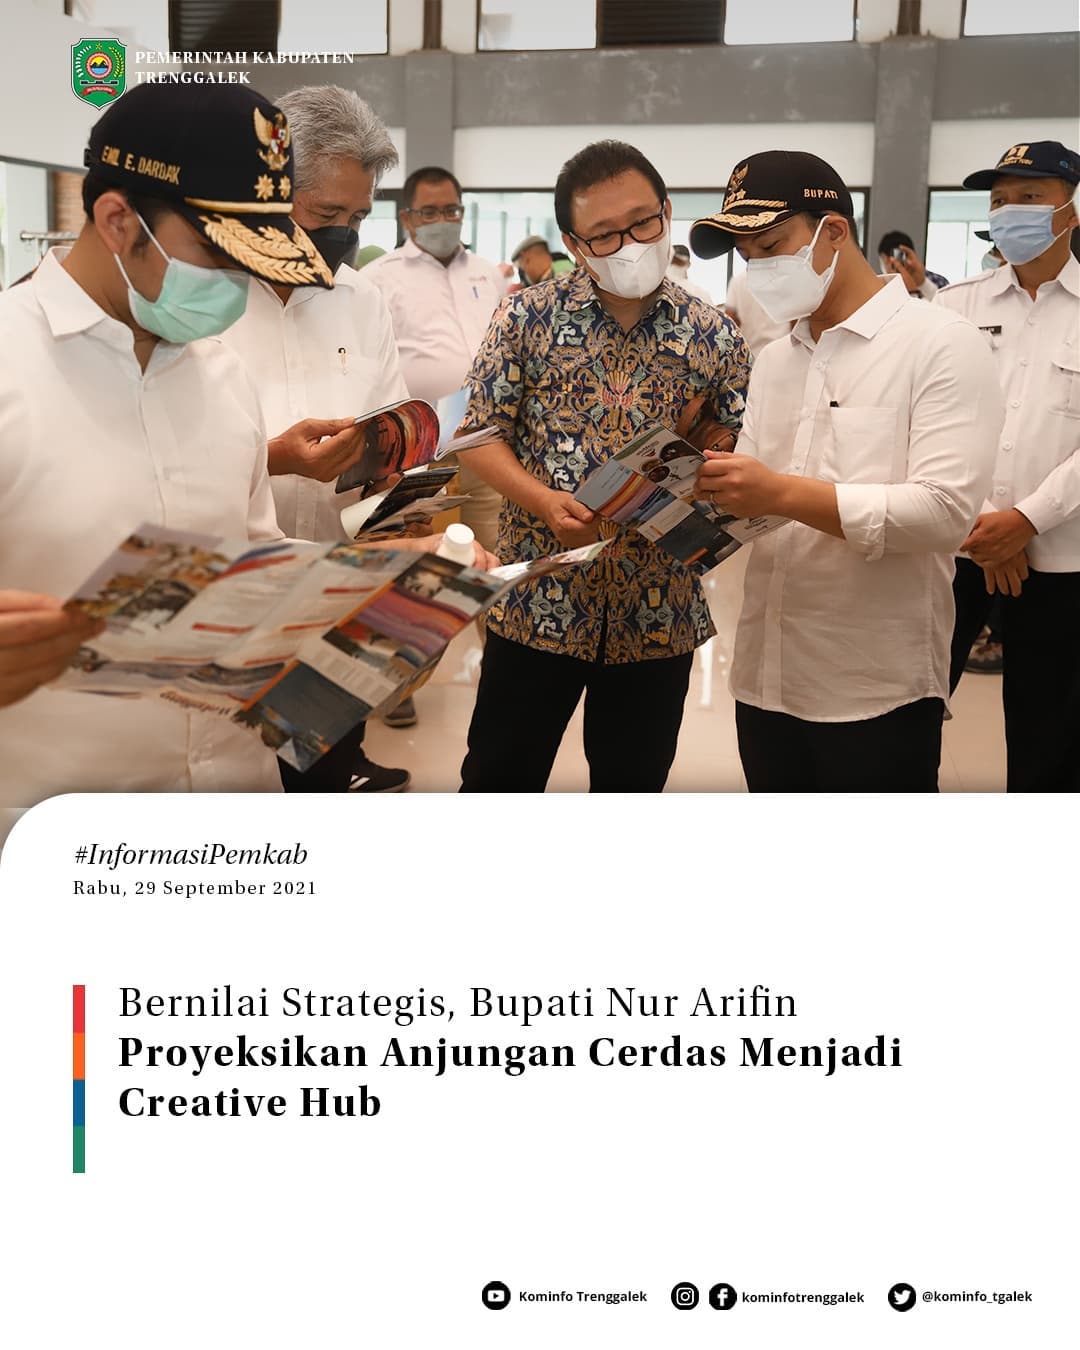 Bernilai Strategis, Bupati Nur Arifin Proyeksikan Ajungan Cerdas Menjadi Creative Hub